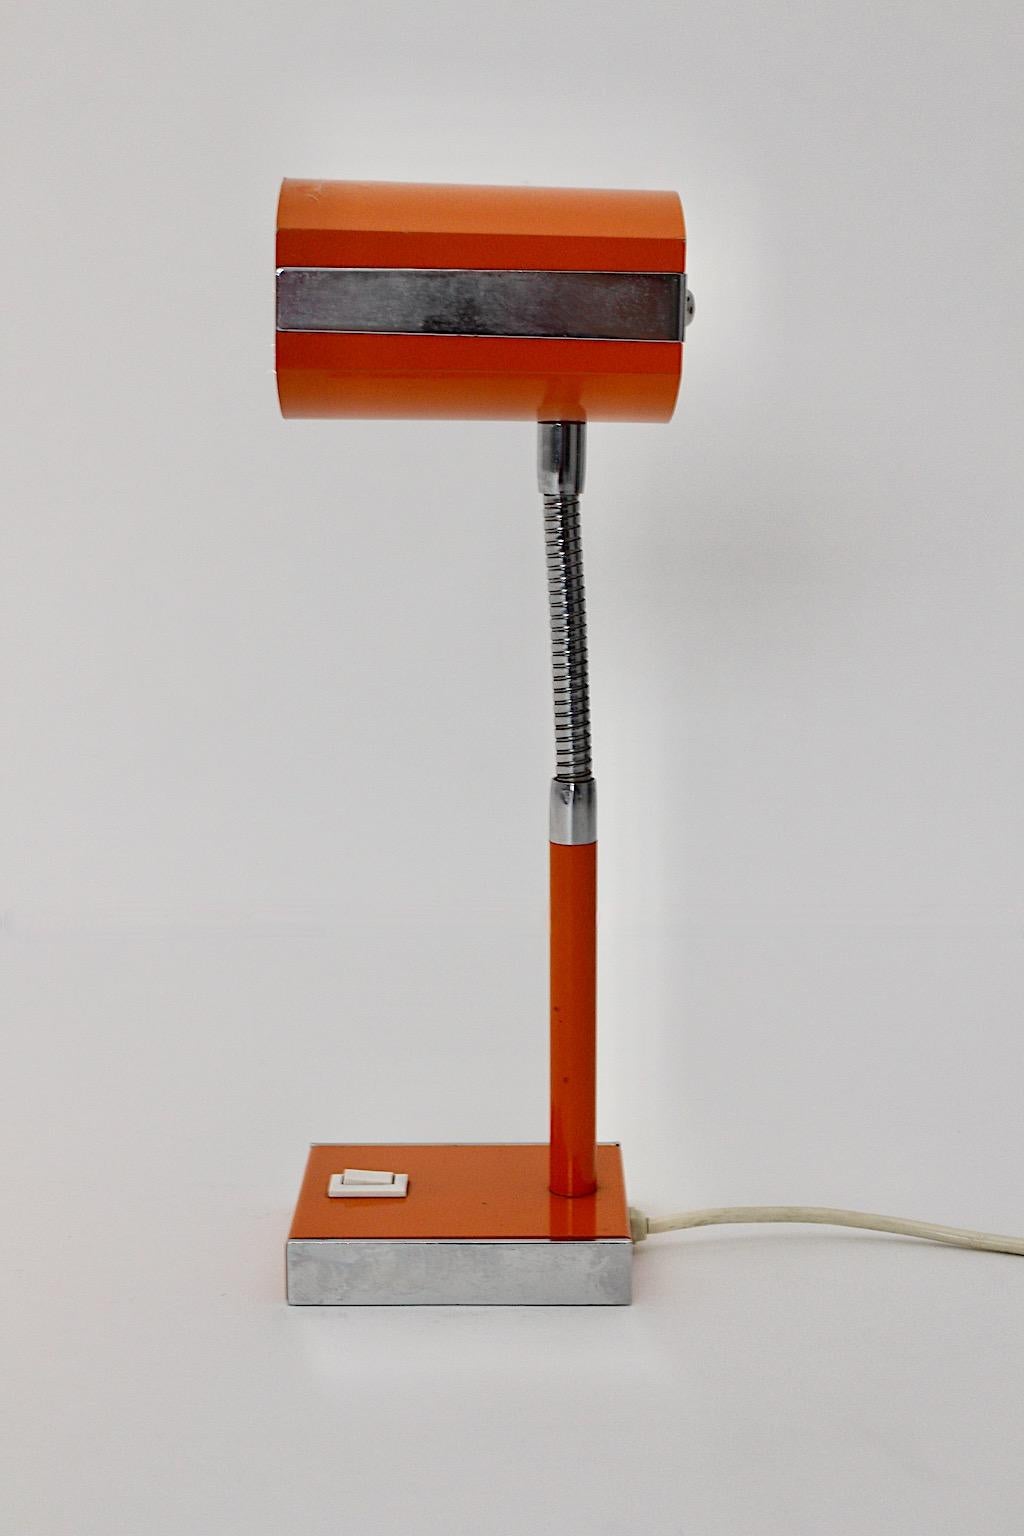 Lampe de bureau vintage Space Age en métal dans les tons orange et argent des années 1960 en Allemagne.
Une magnifique lampe de table ou de bureau en couleur orange ludique avec une tige flexible en argent et une base rectangulaire des années